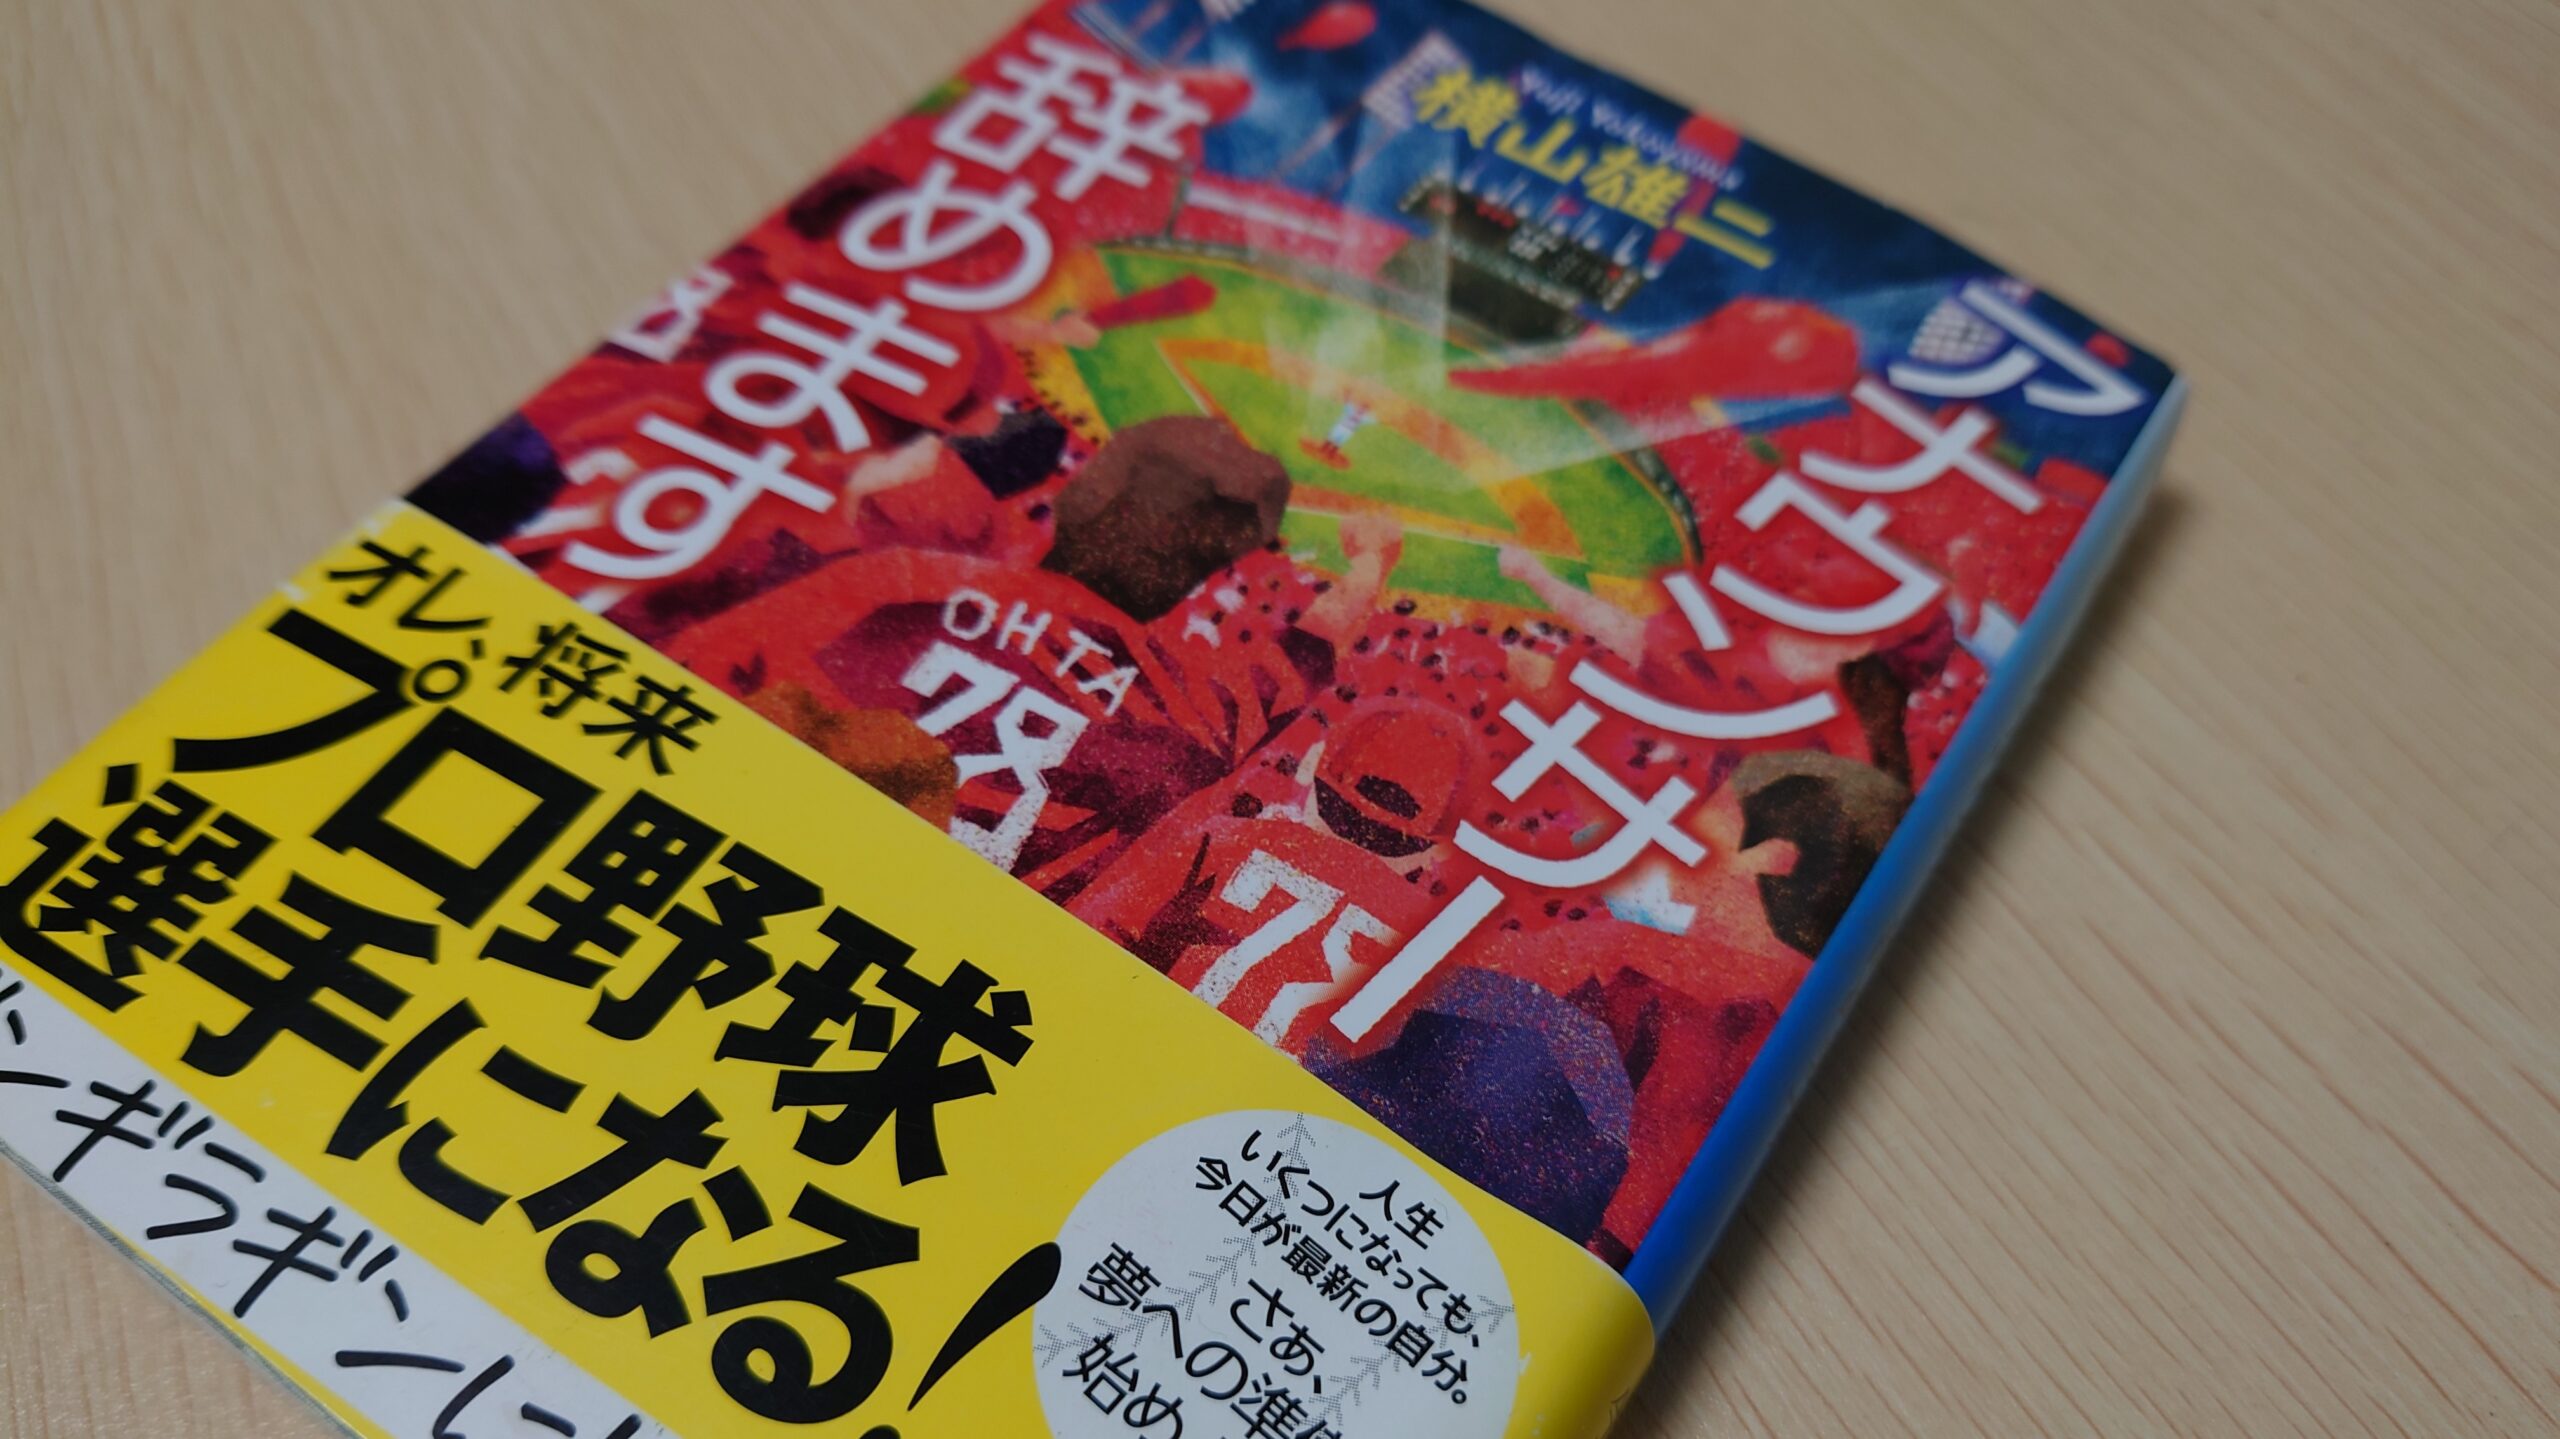 横山雄二さんの小説『アナウンサー辞めます』。おっさん世代の心に響く作品。